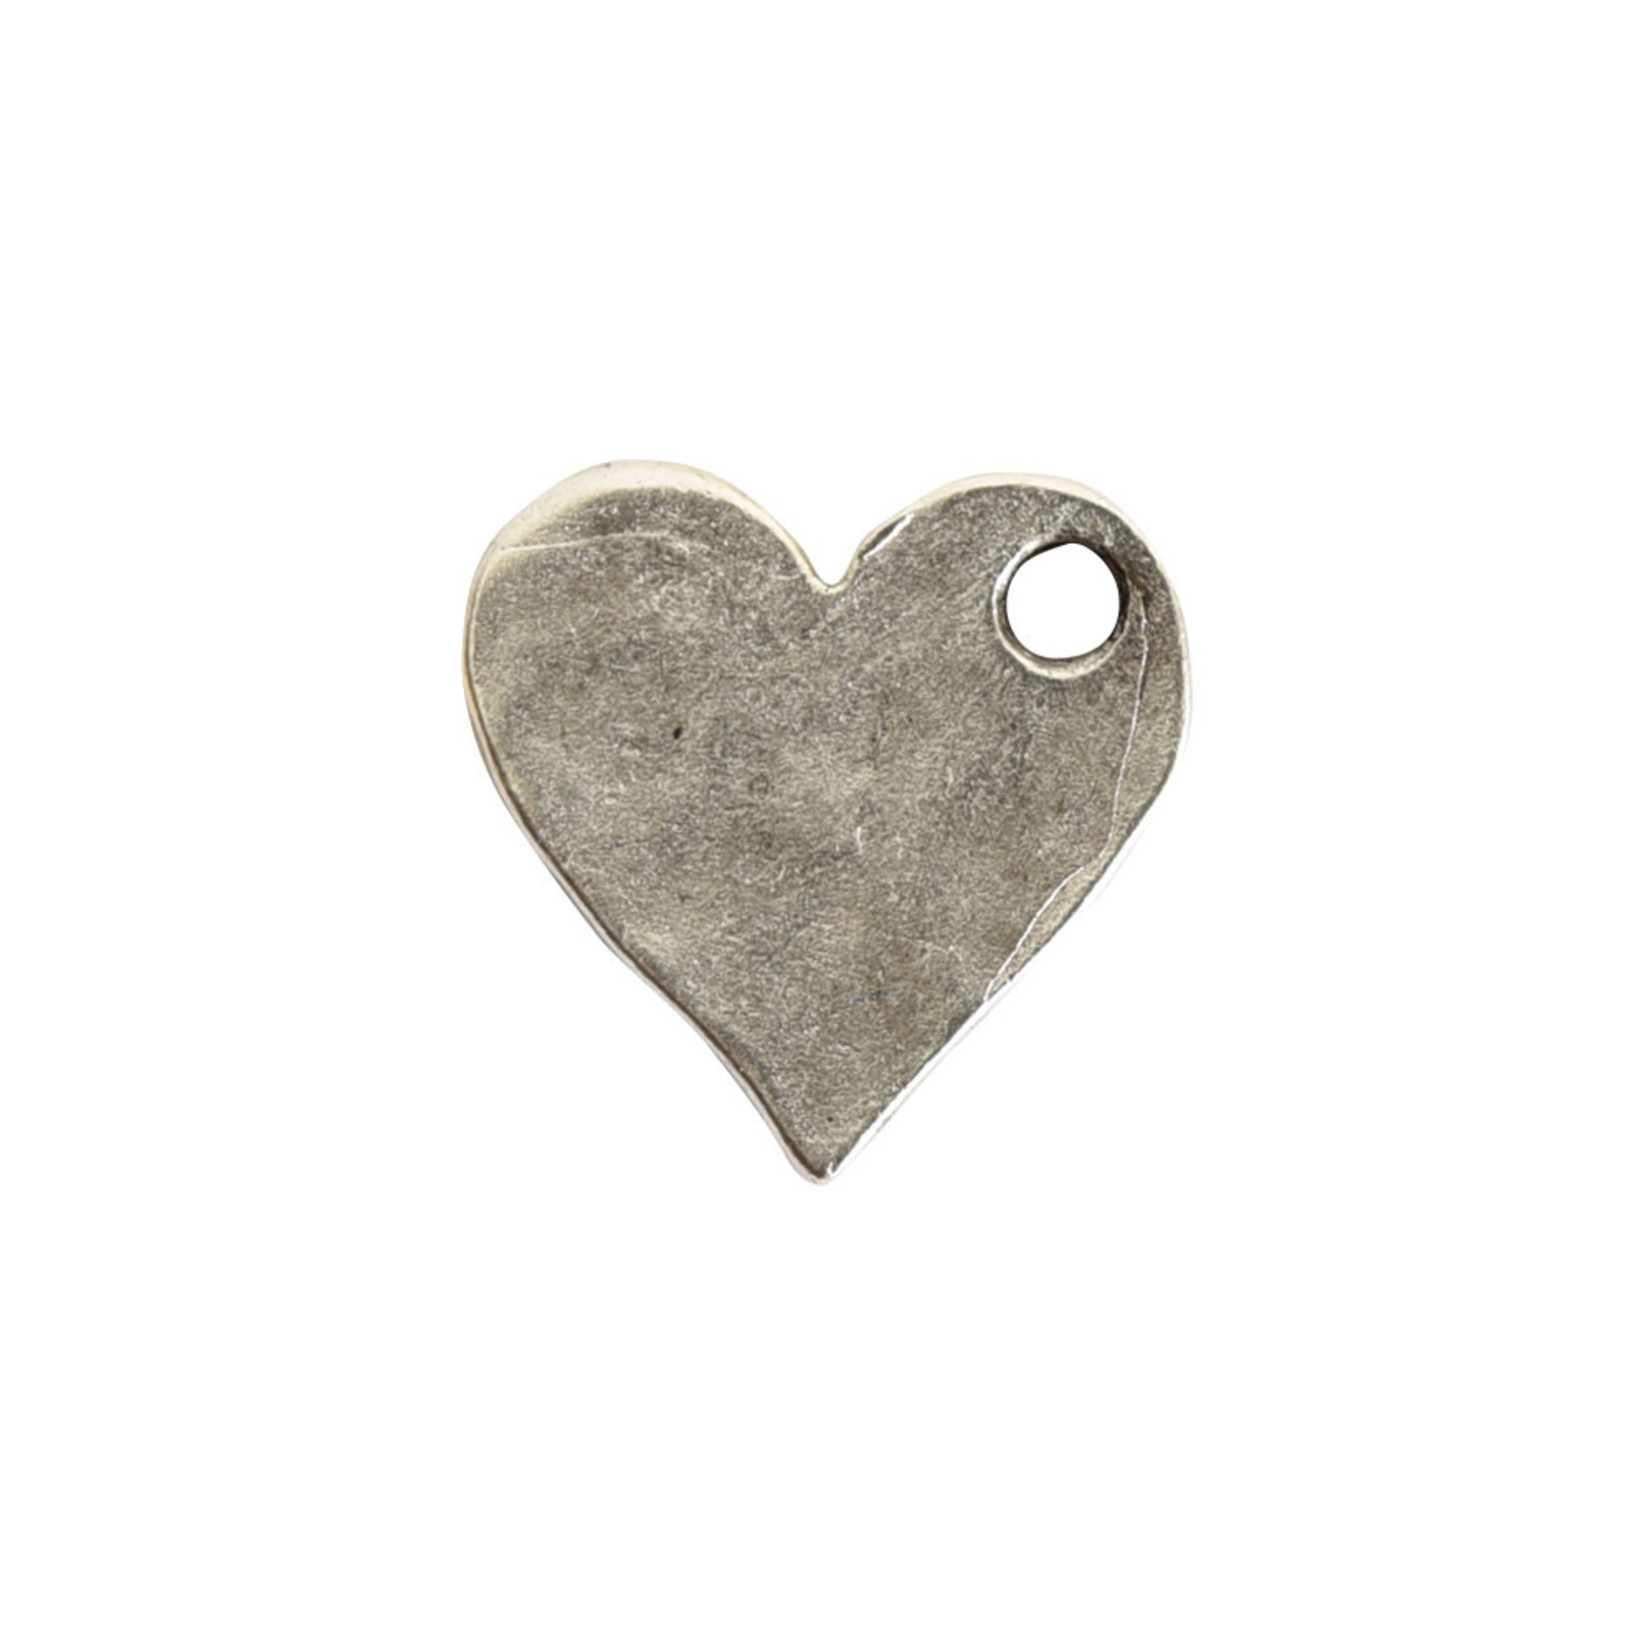 Nunn Design Heart Charm Antique Silver  Mini Hammered Flat Tag Charm